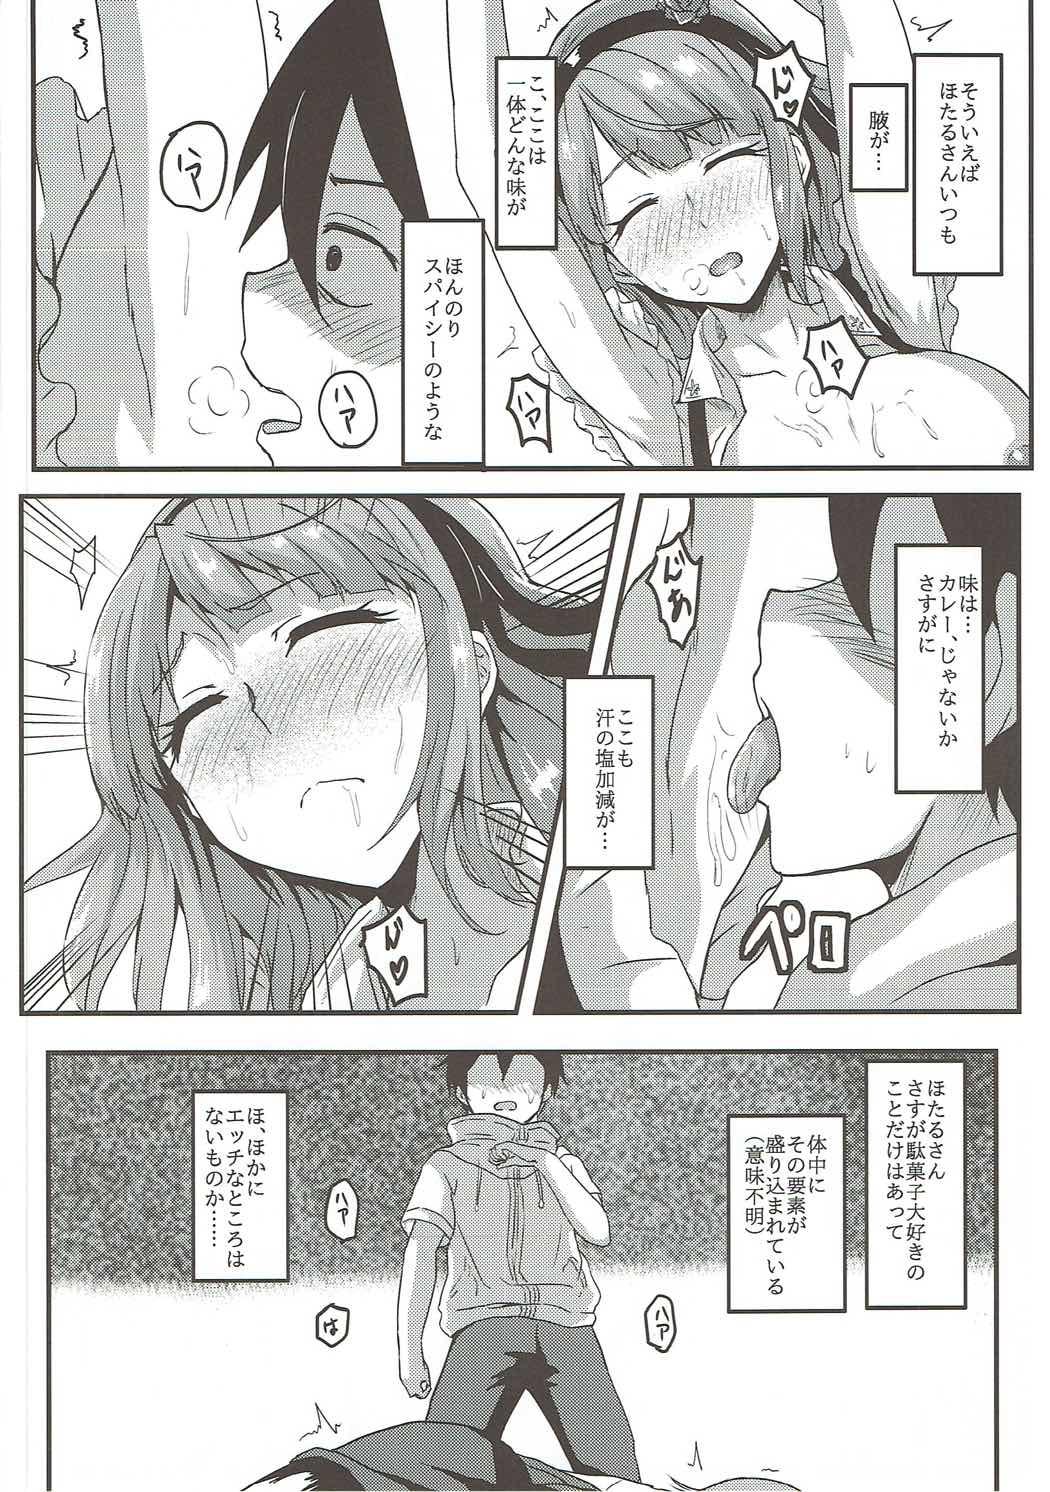 Tetas Hotaru-san wa Dagashi no Kaori? - Dagashi kashi Bottom - Page 7